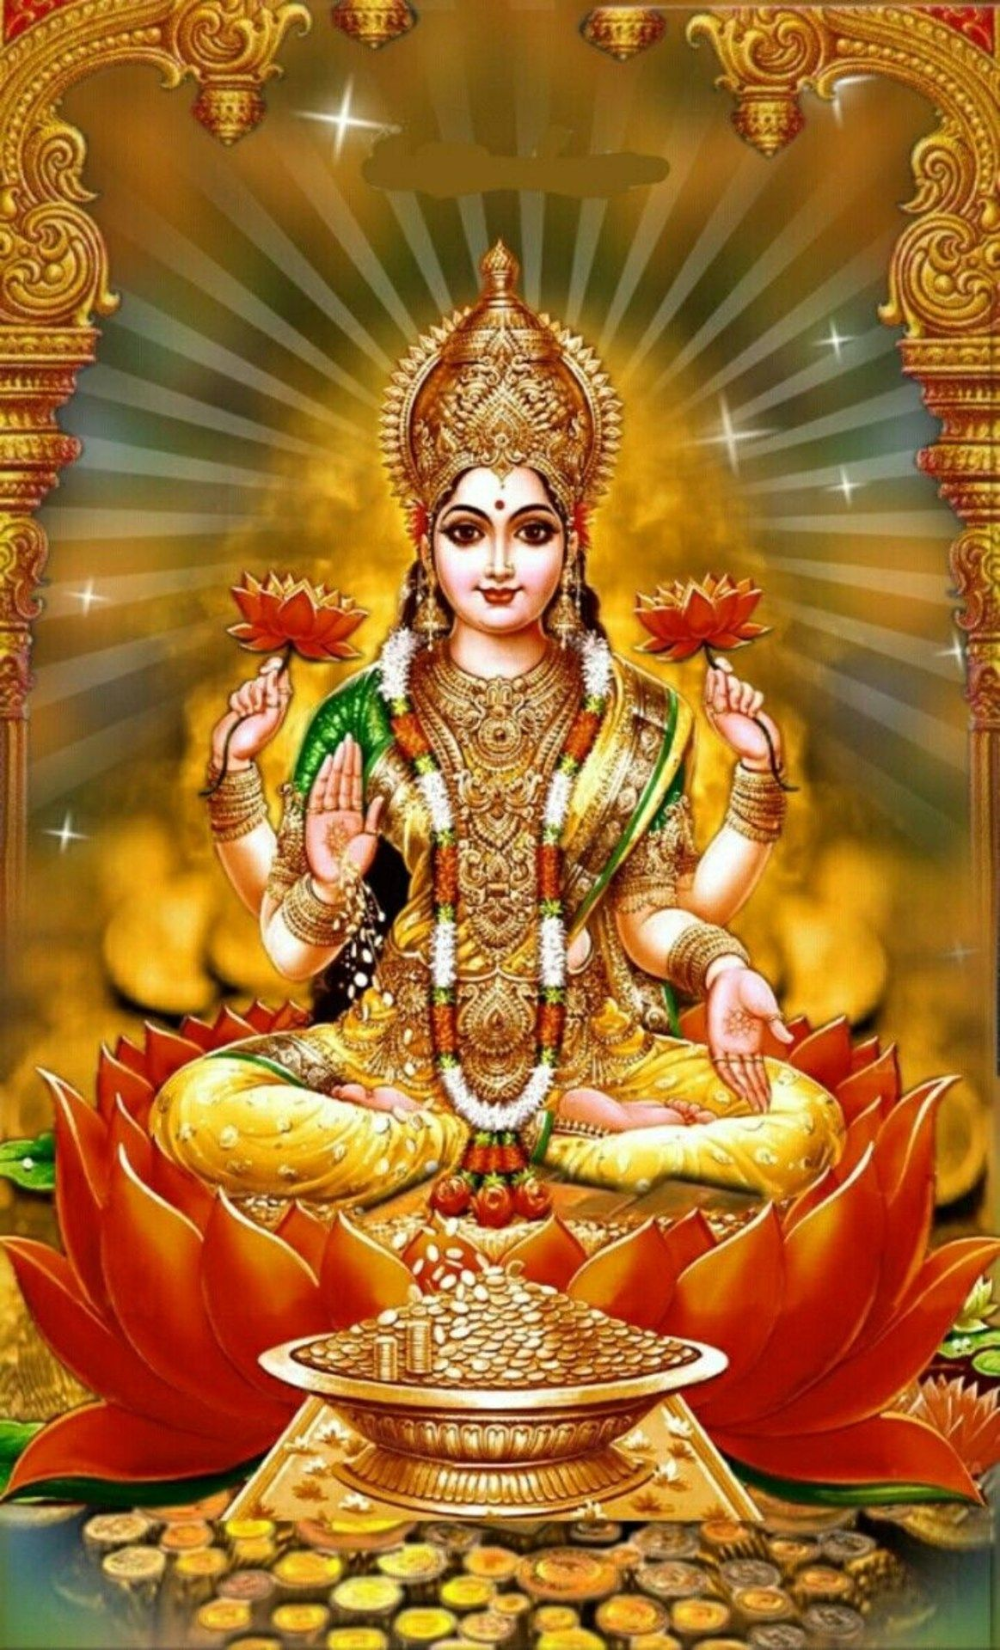 Lakshmi Quotes on Twitter. Lakshmi image, Durga goddess, Kali goddess